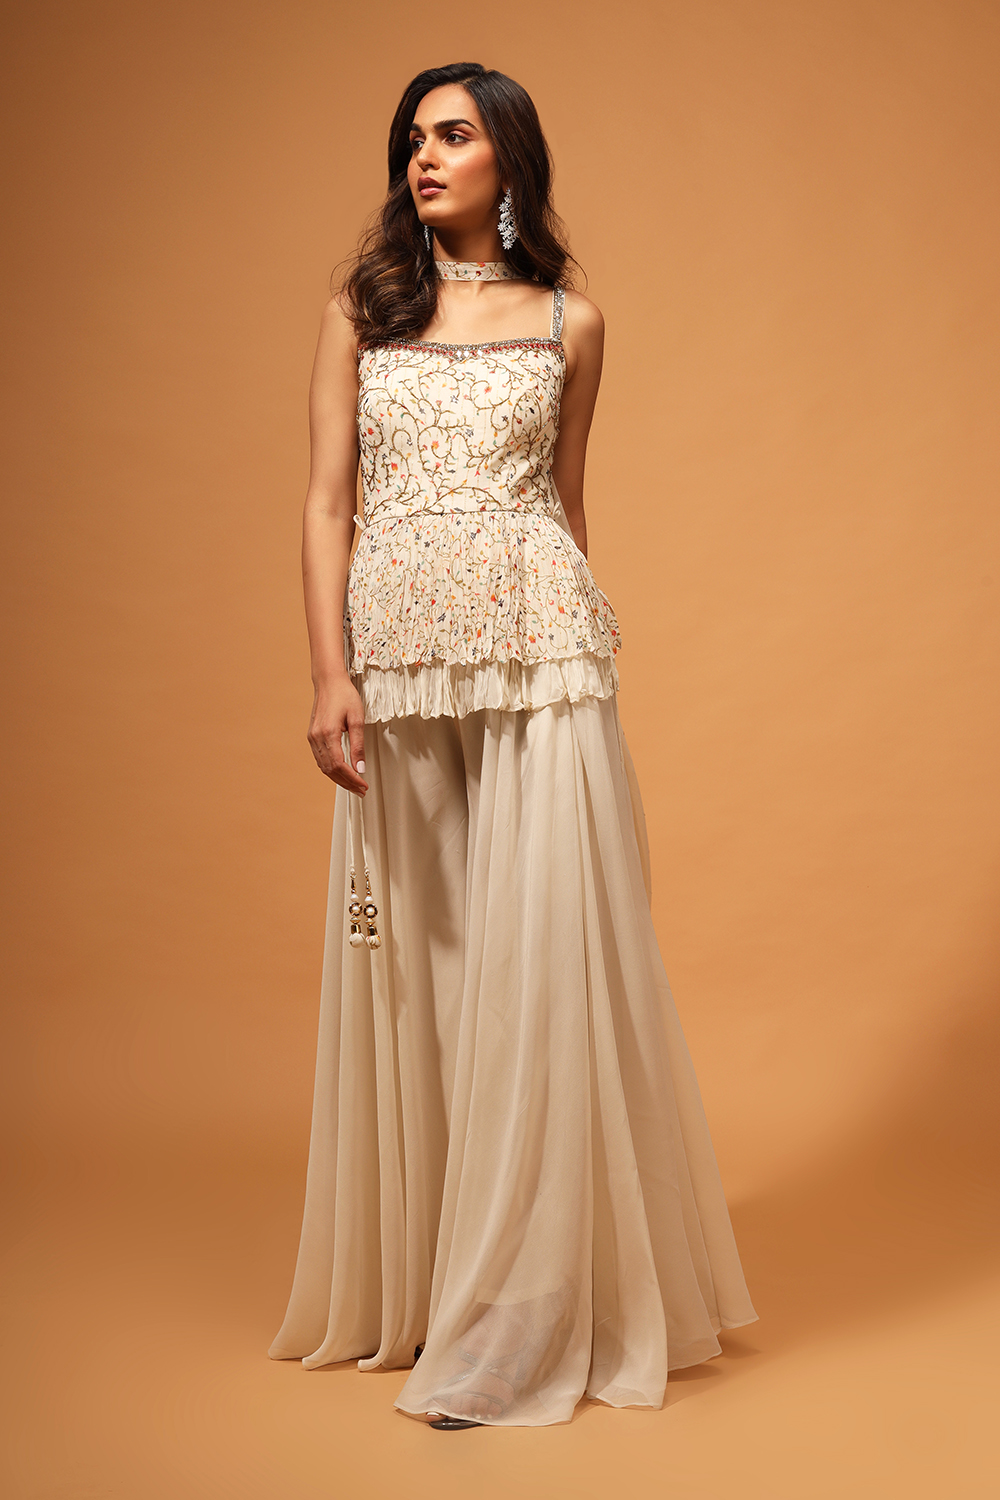 Indian Pakistani Ready To Wear Dress 3 Piece Party Wedding Dress Peplum |  eBay